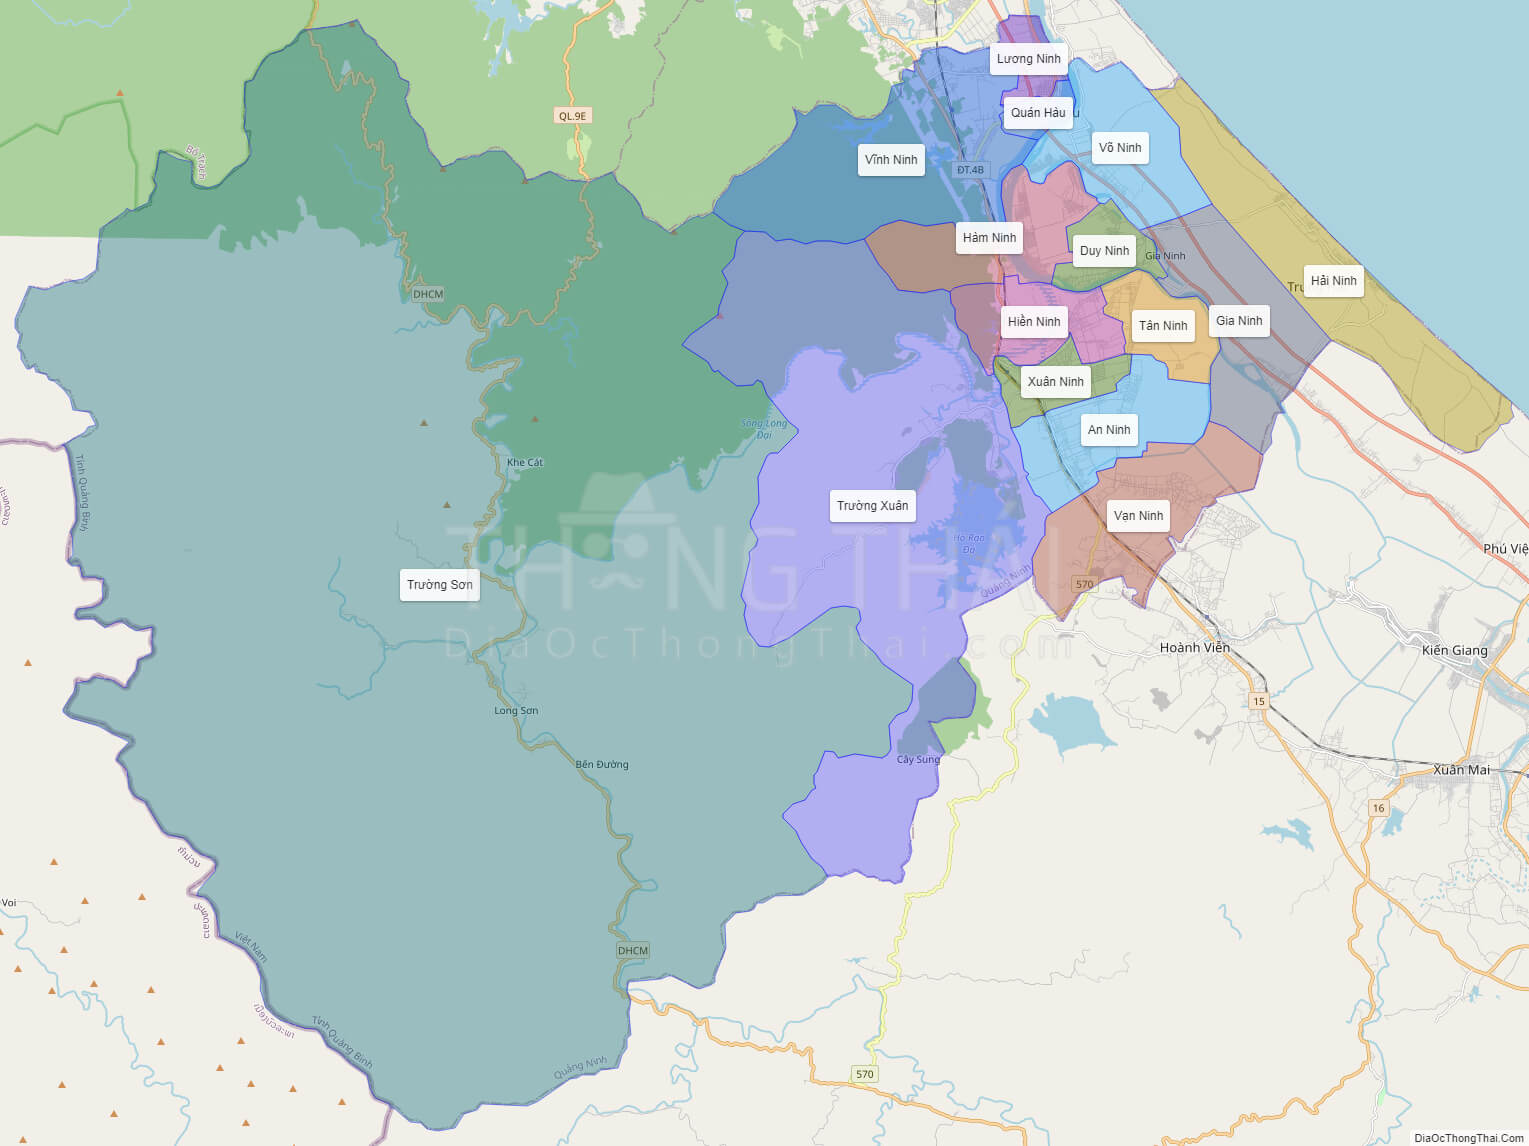 Bản đồ huyện Quảng Ninh Quảng Bình năm 2024 sẽ cho bạn thấy những sự phát triển mạnh mẽ của khu vực này. Các khu công nghiệp và đô thị được xây dựng mới, mang lại nhiều việc làm và tăng thu nhập cho người dân địa phương. Cảnh quan thiên nhiên của huyện vẫn được giữ gìn và phát triển, thu hút nhiều du khách đến tham quan và trải nghiệm.